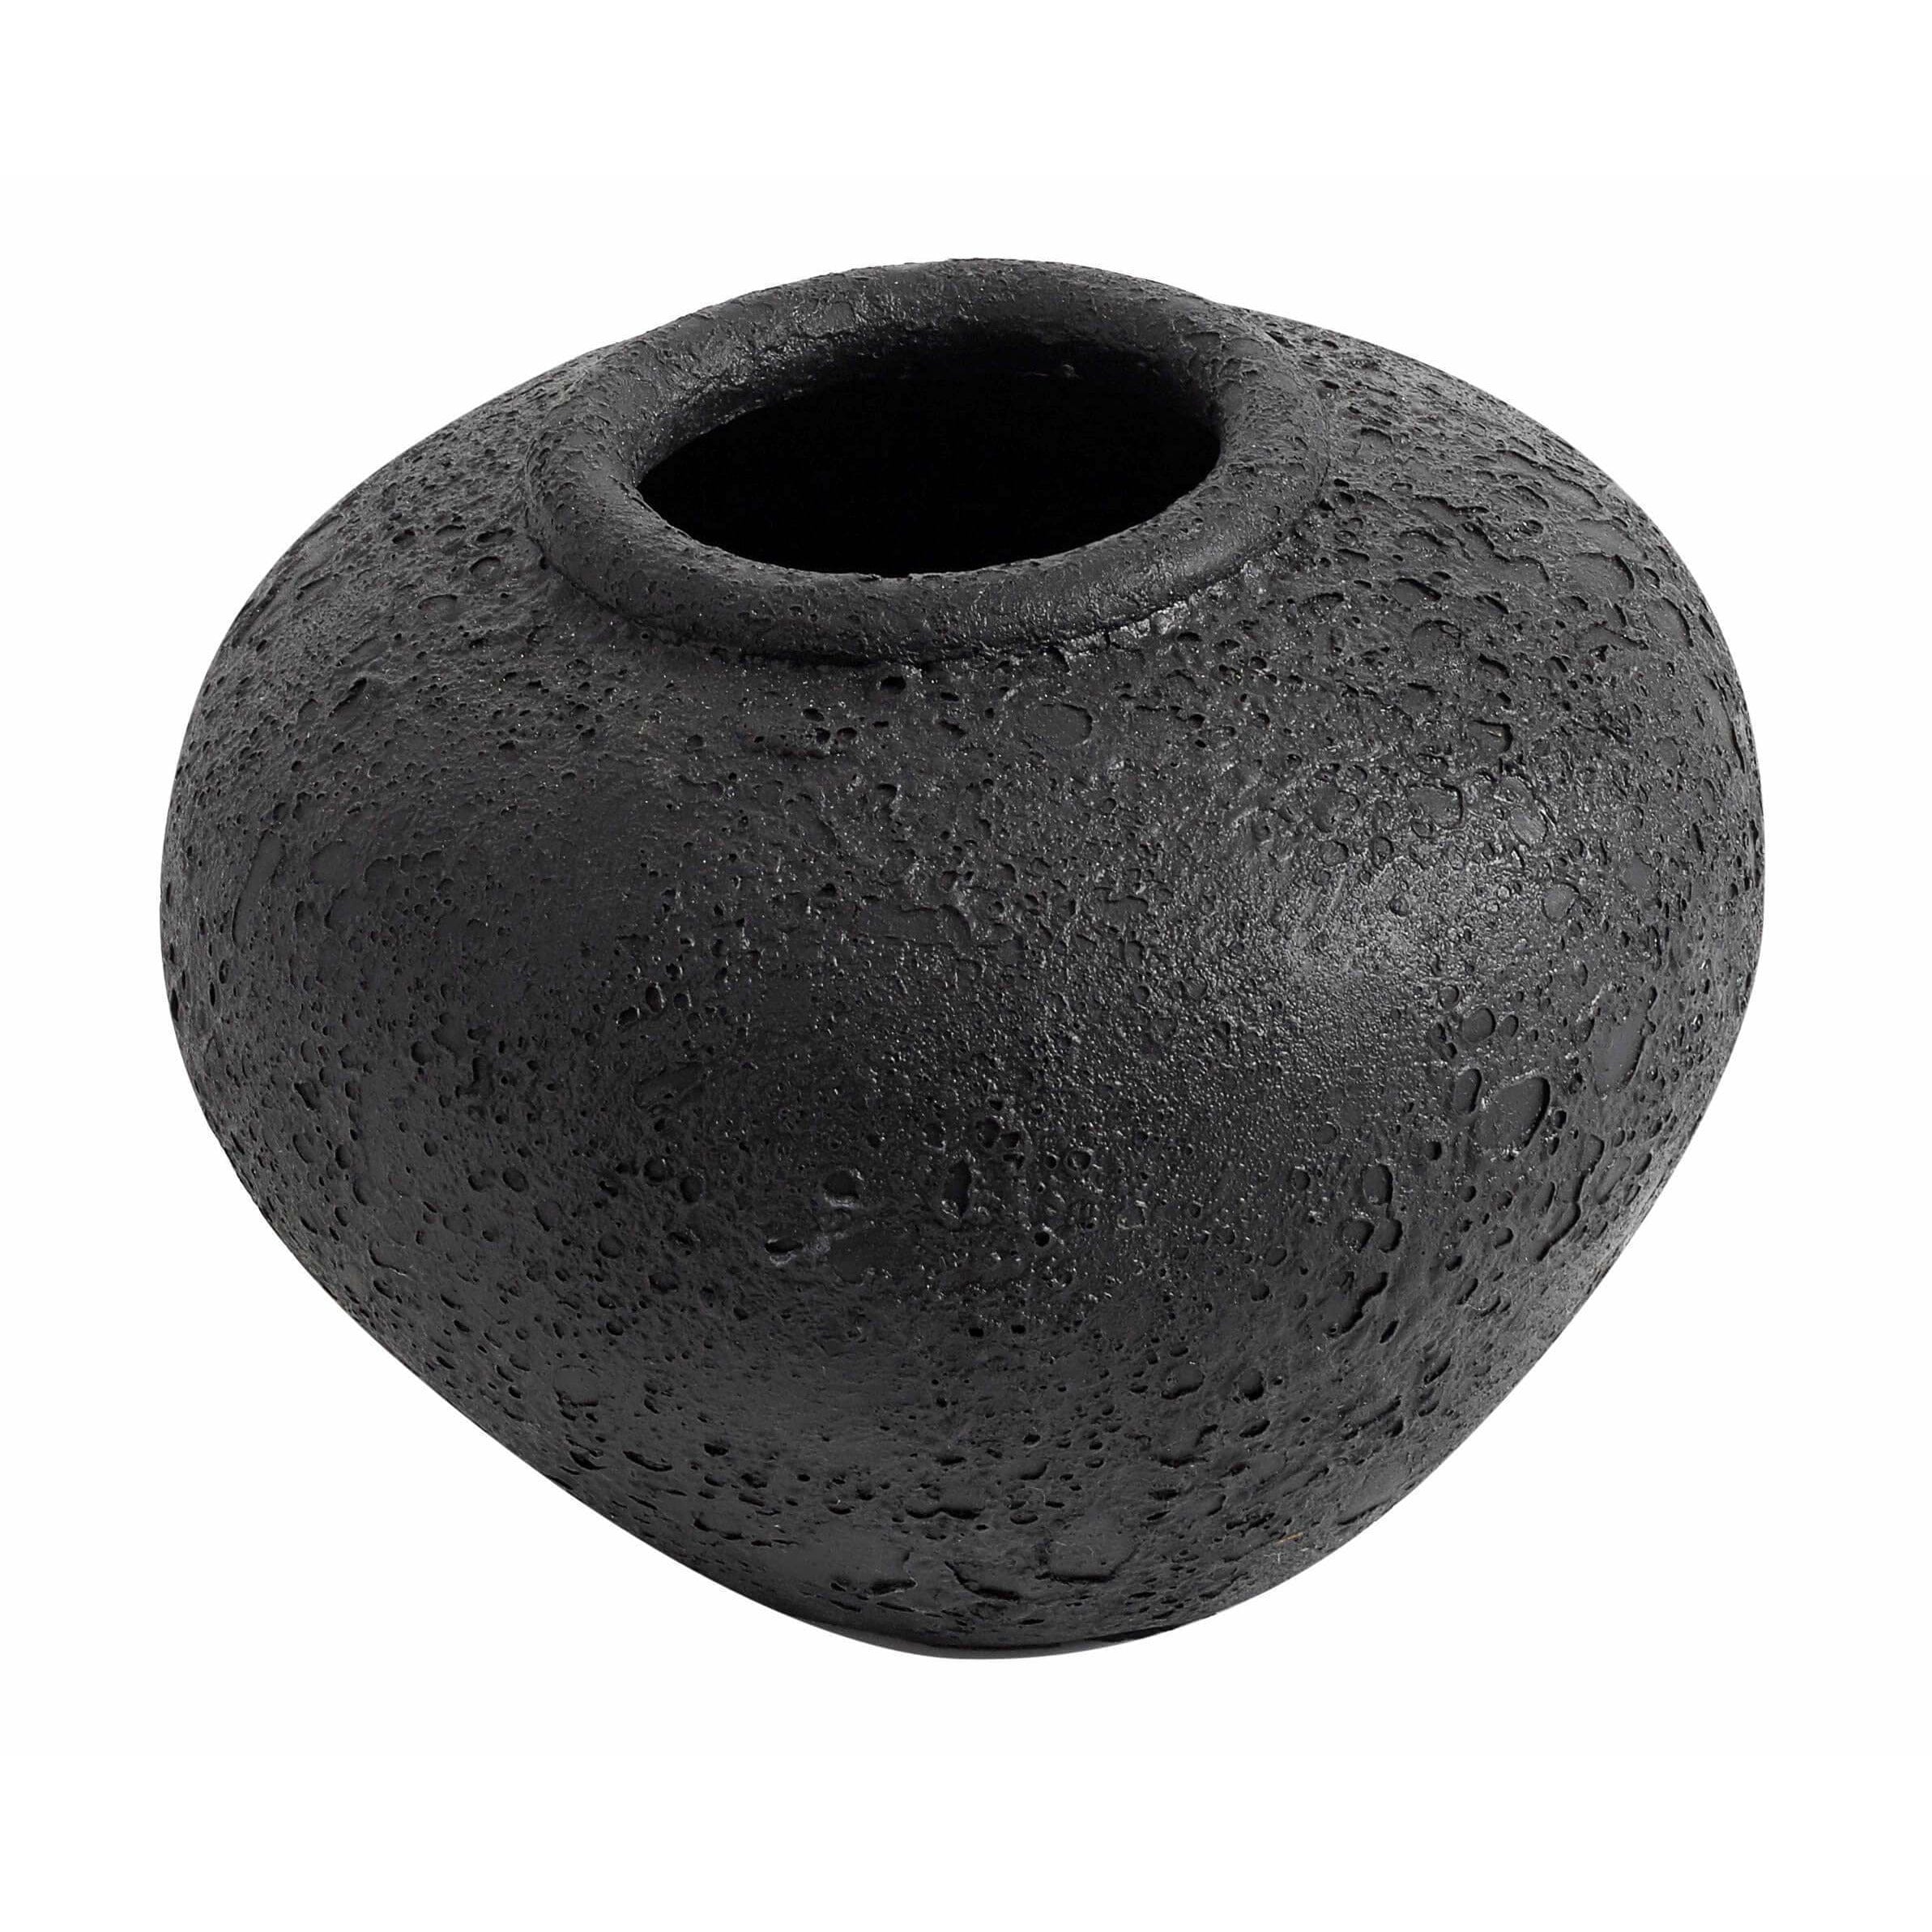 Muubs Luna Vase Black, 18 cm